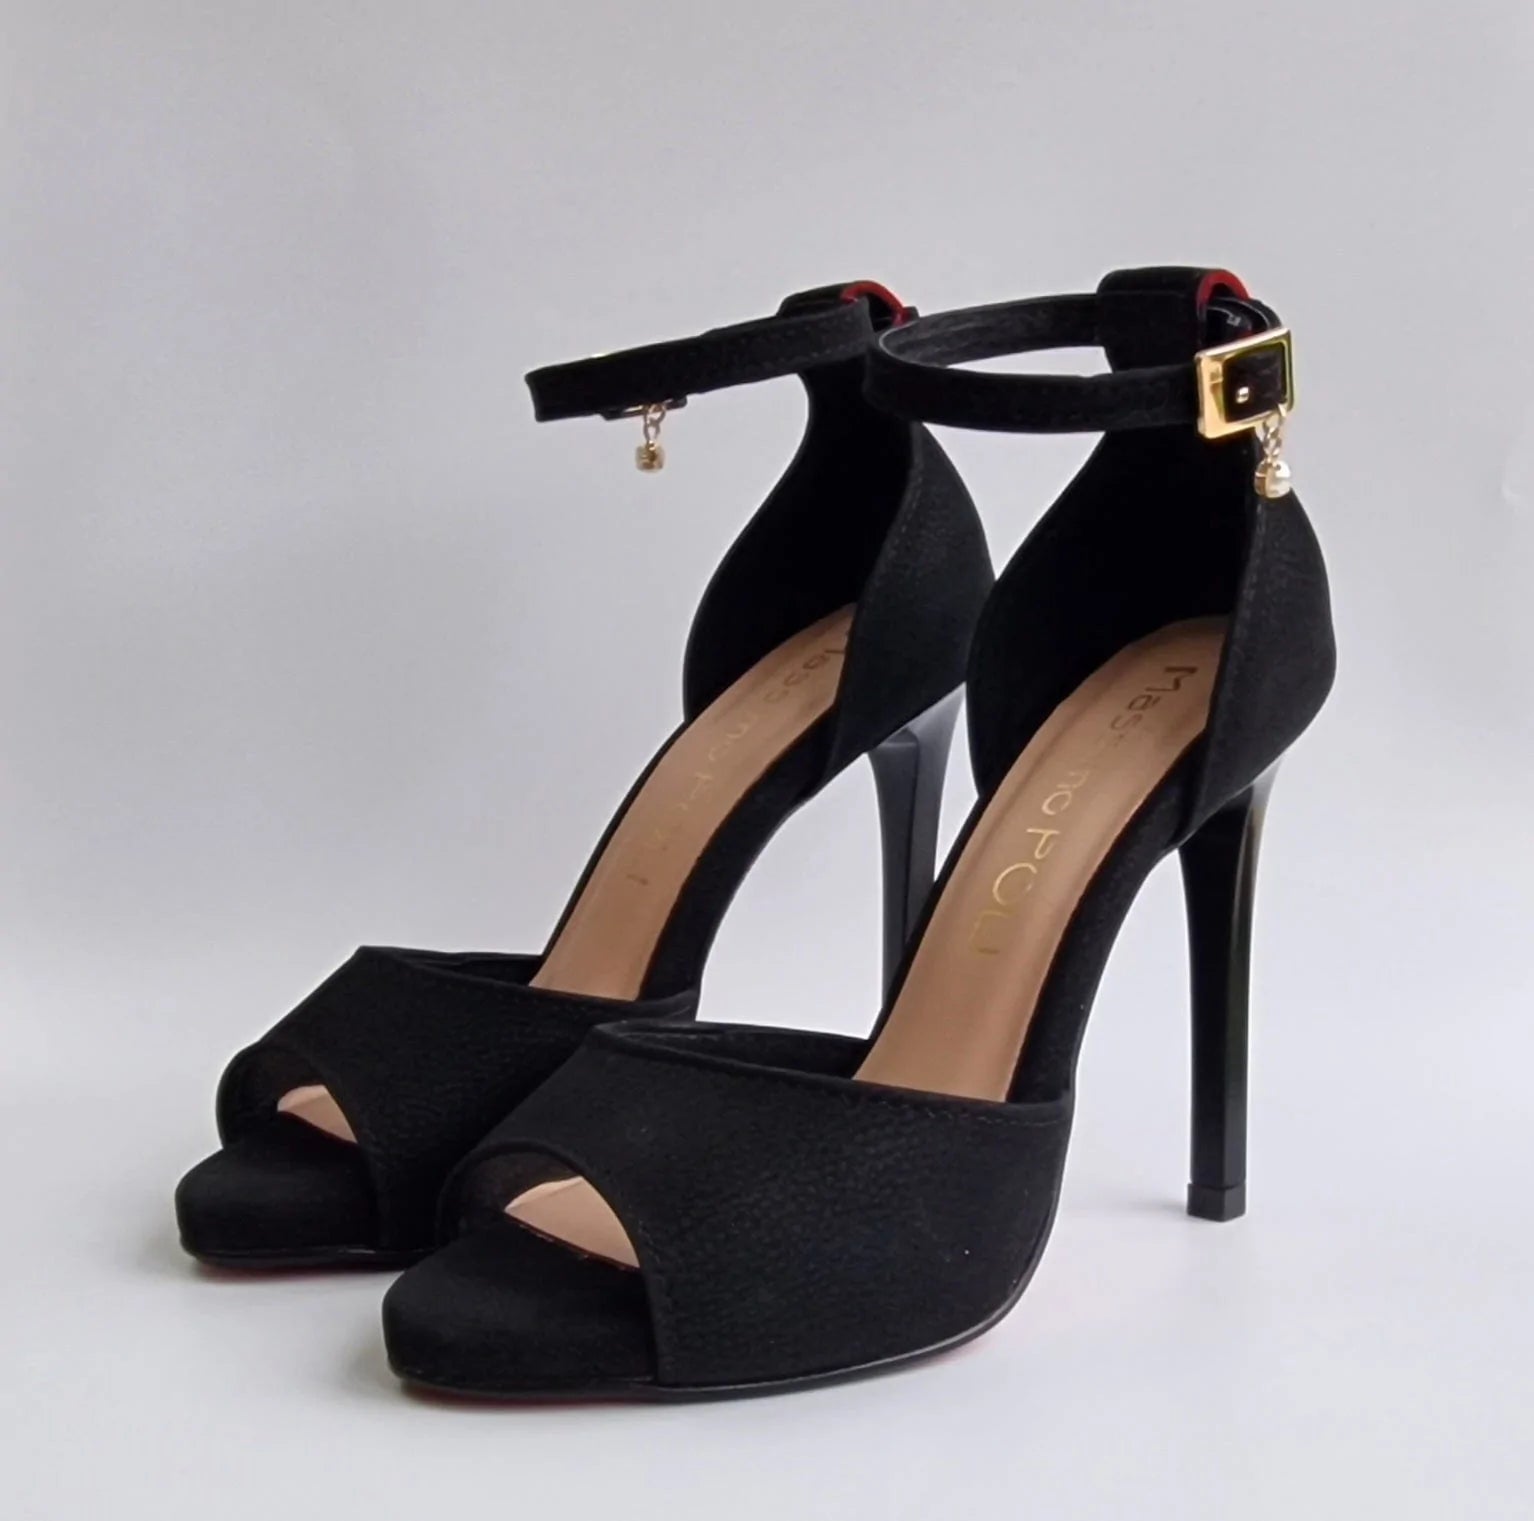 Open toe platform court heels in black suede